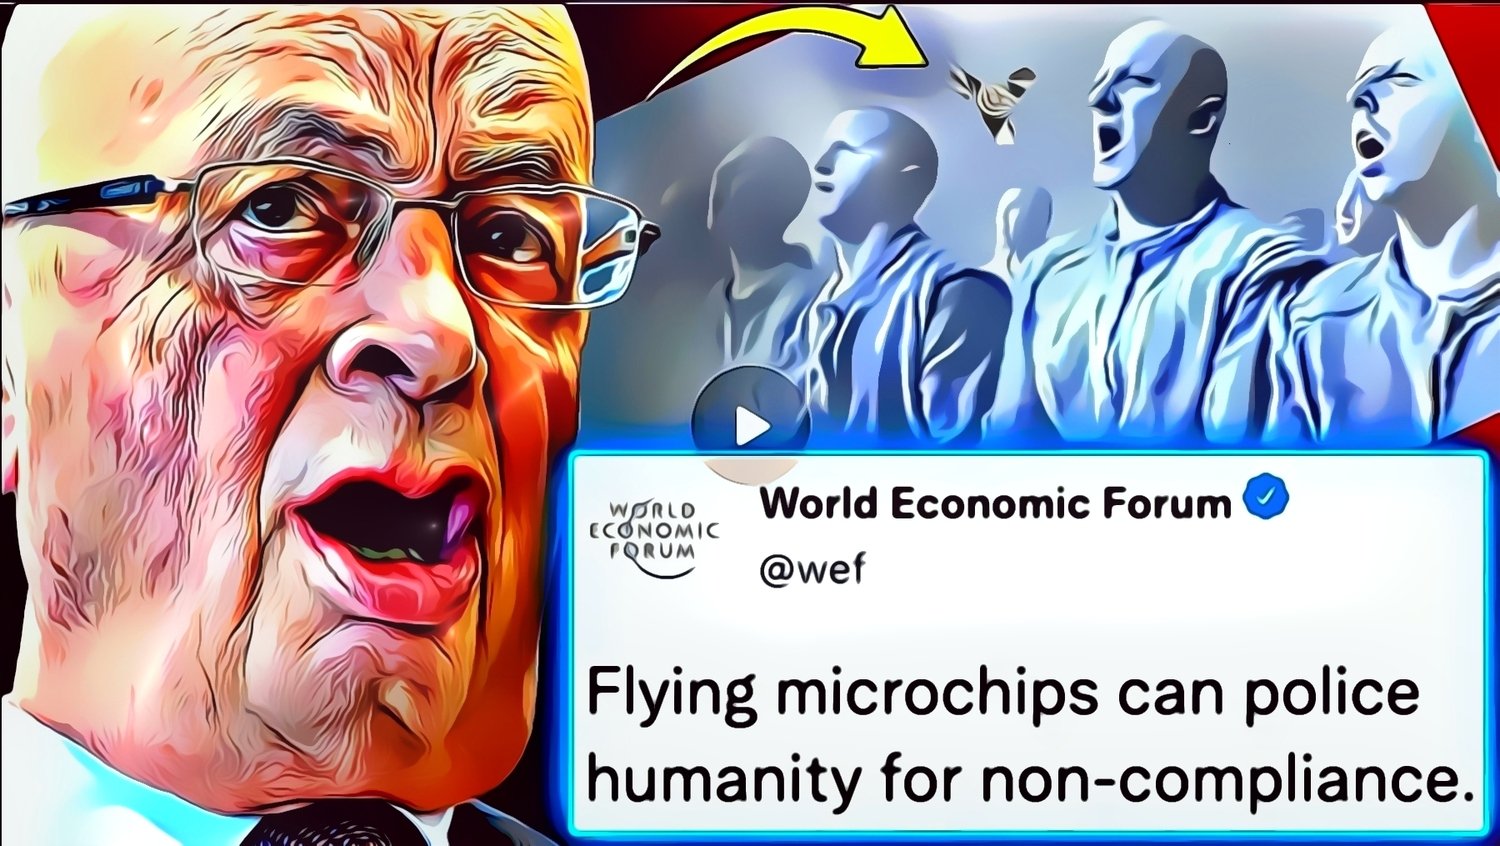 WEF esittelee “lentävät mikrosirut”, jotka voivat havaita “ajatusrikokset” ja “lamauttaa aivot”